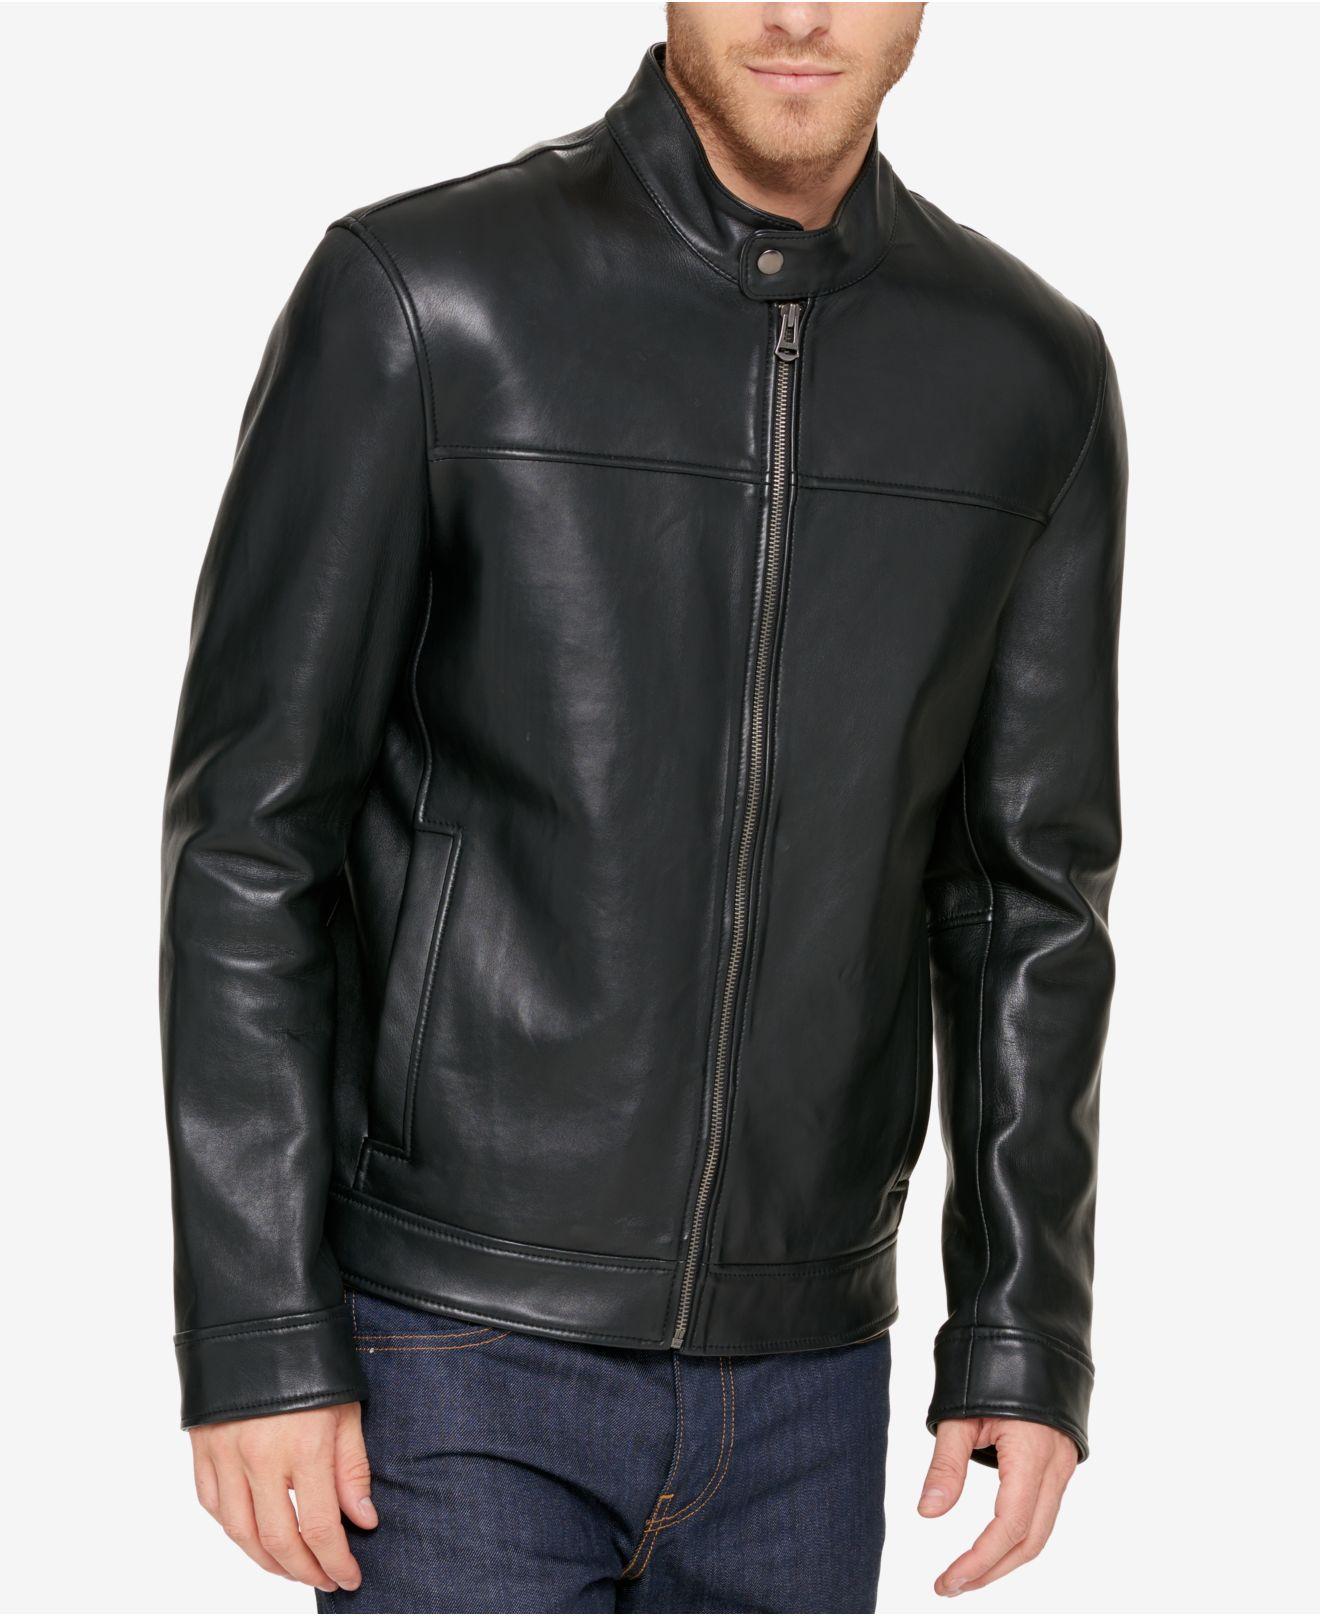 Mens Leather & Mesh Racer Jacket w/Removable Rain Jacket Liner Black 